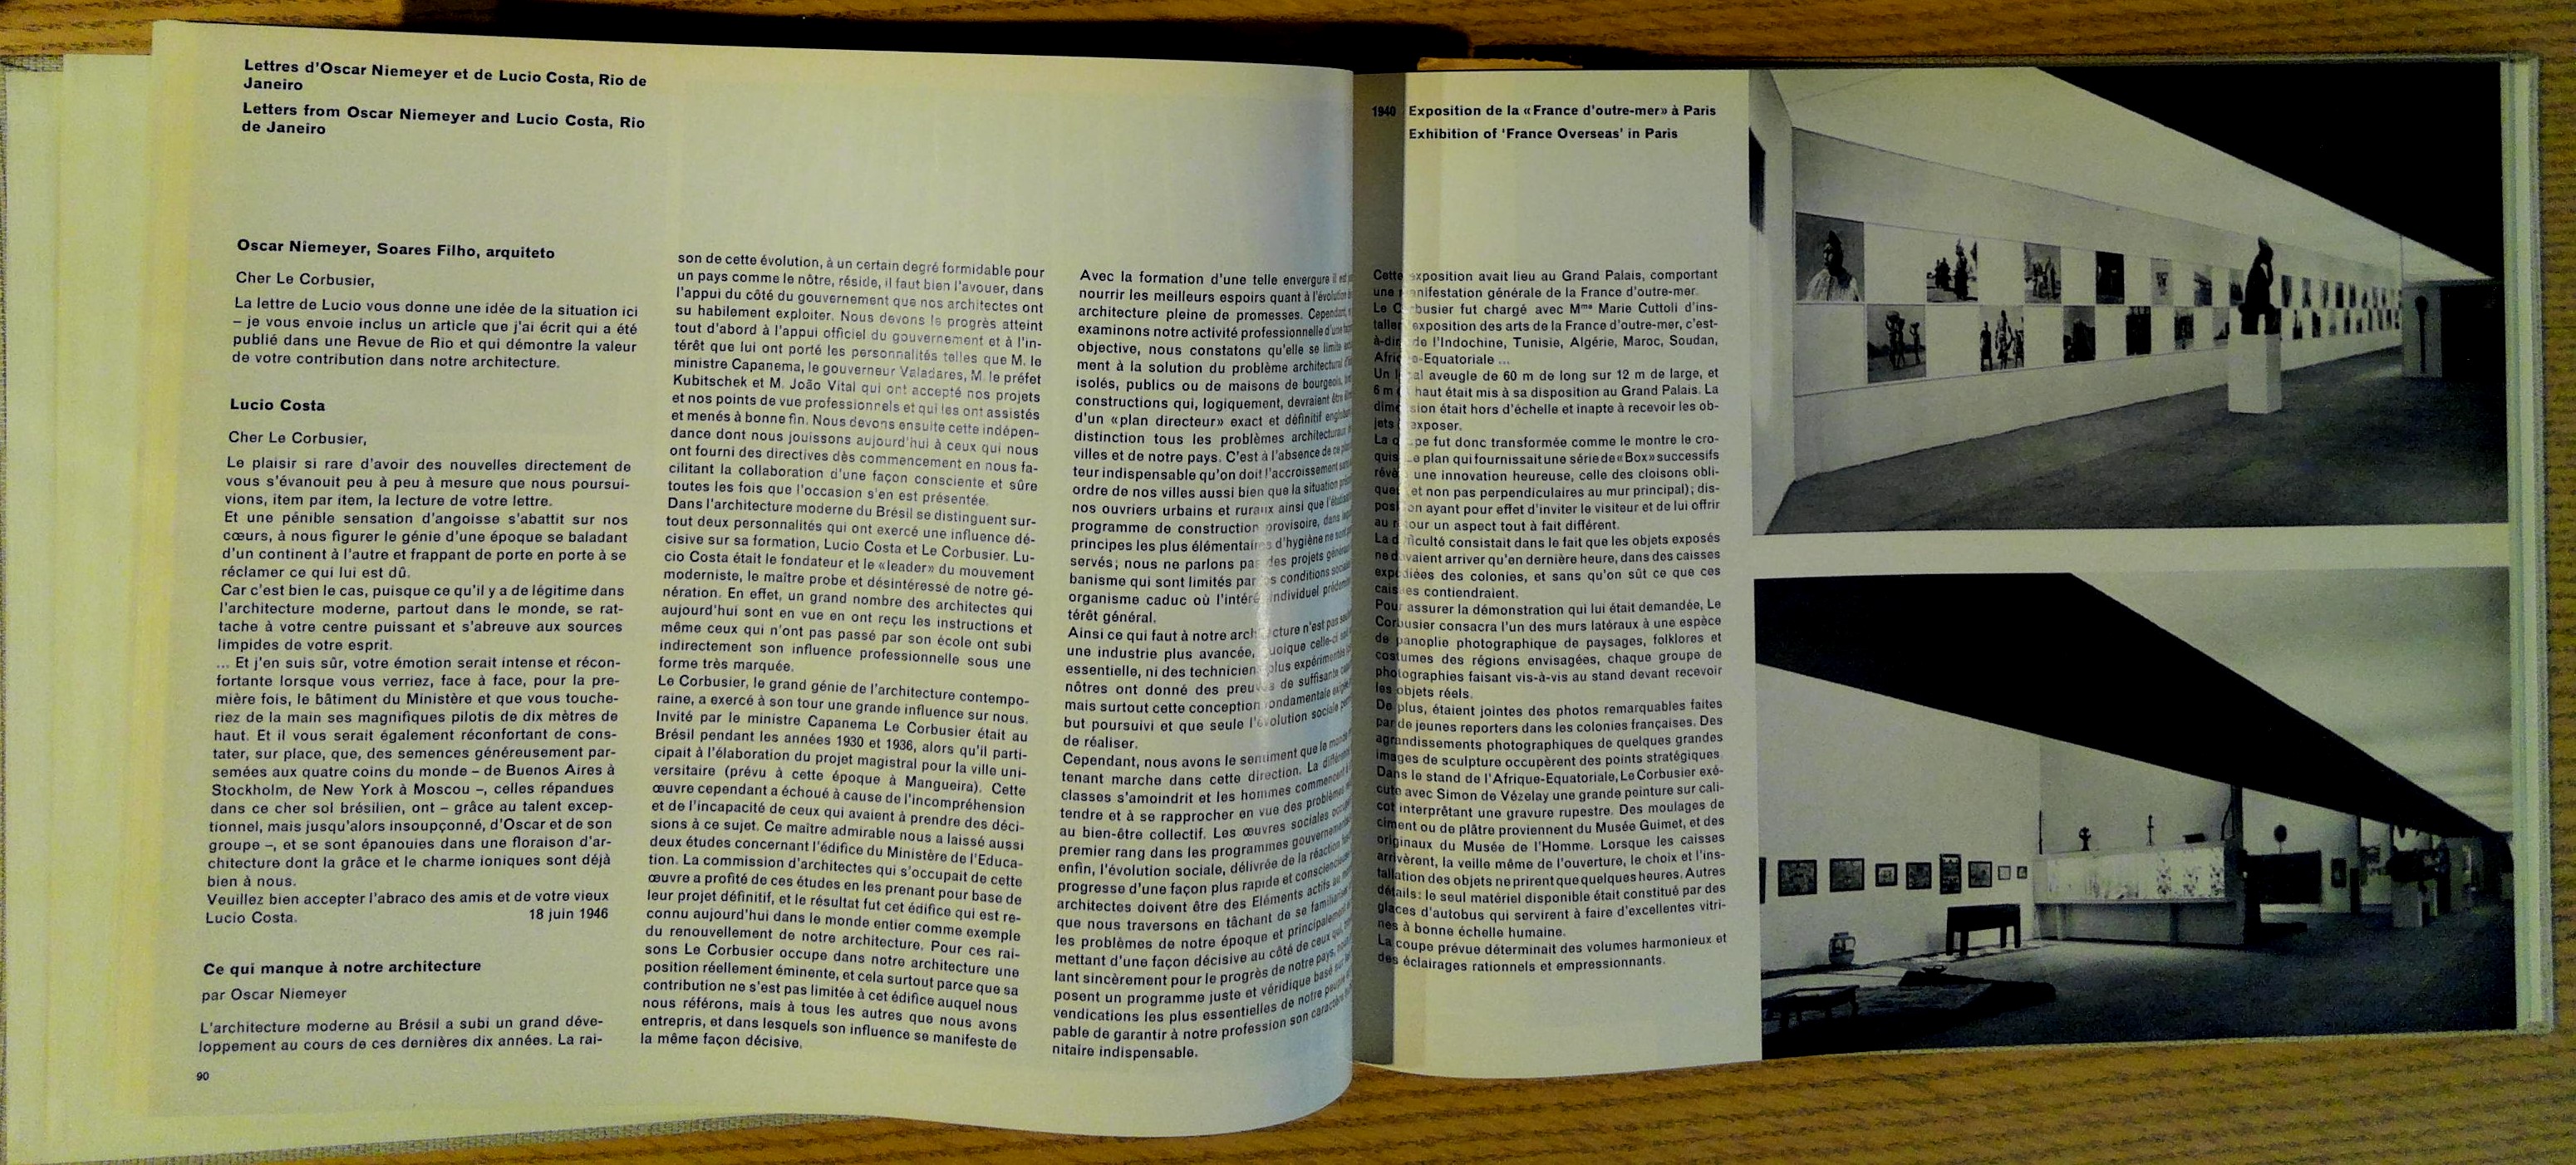 Le Corbusier et Pierre Jeanneret: The Complete Architectural Works